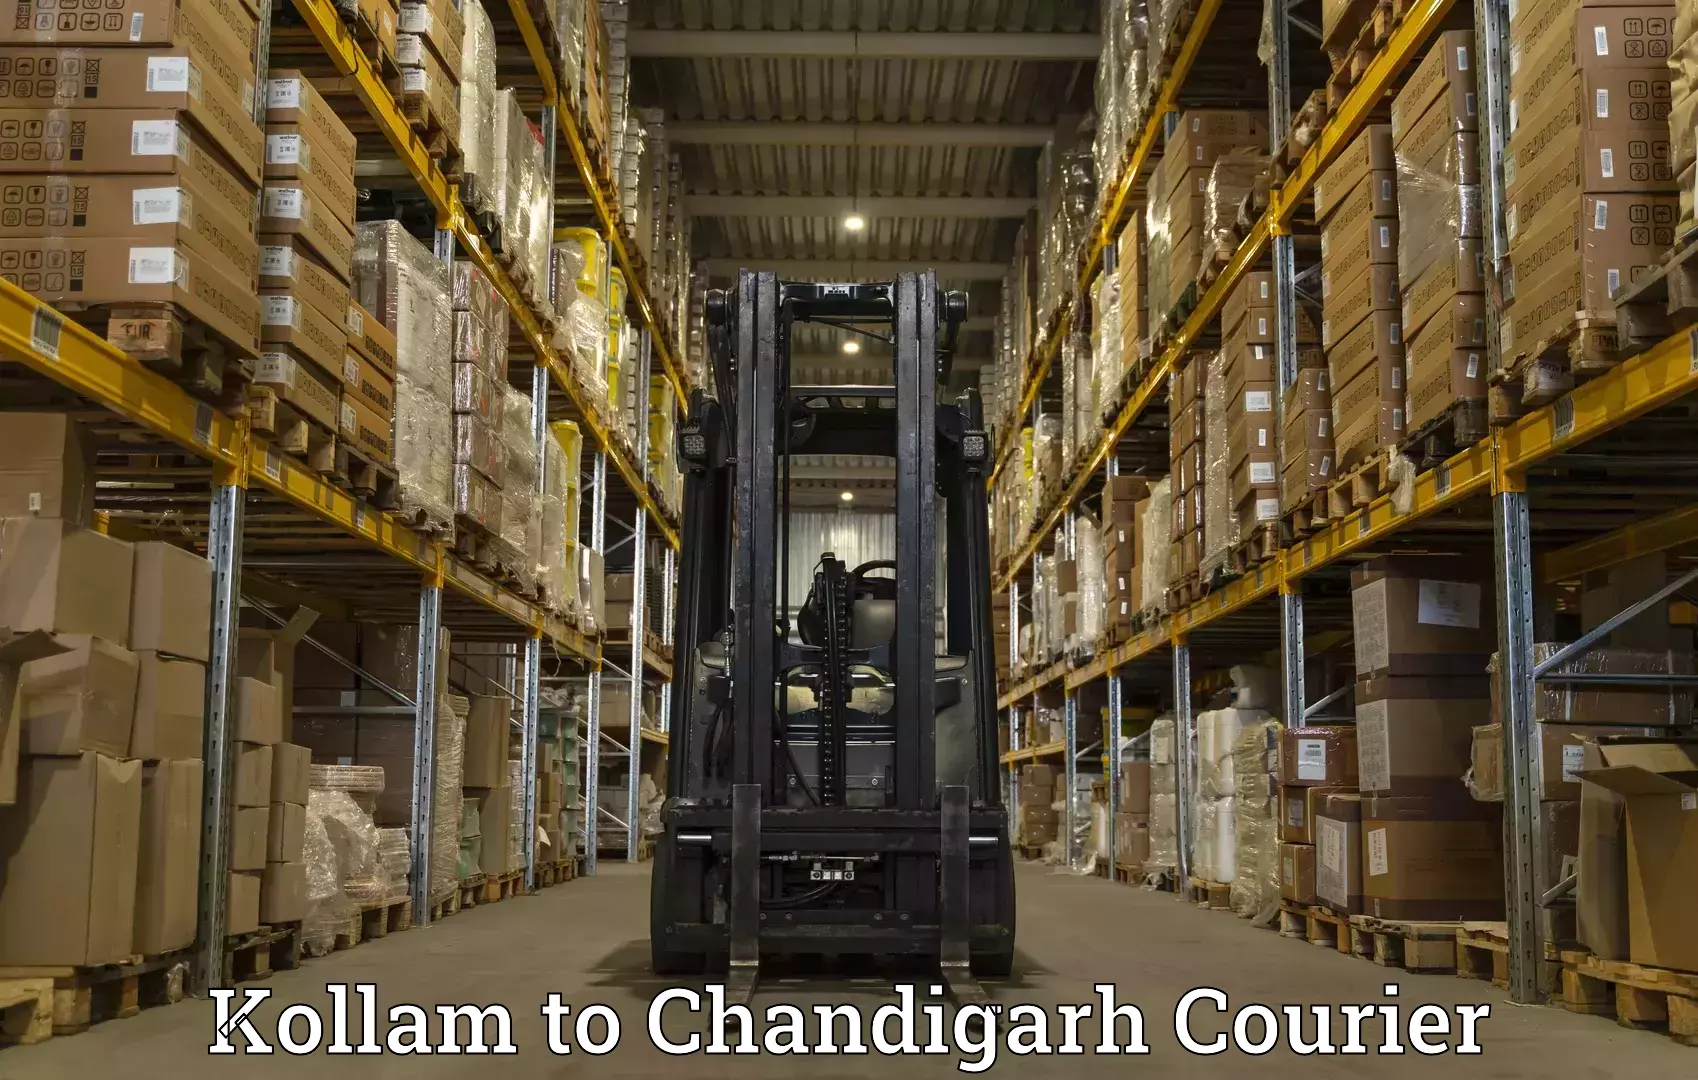 Advanced shipping technology Kollam to Chandigarh